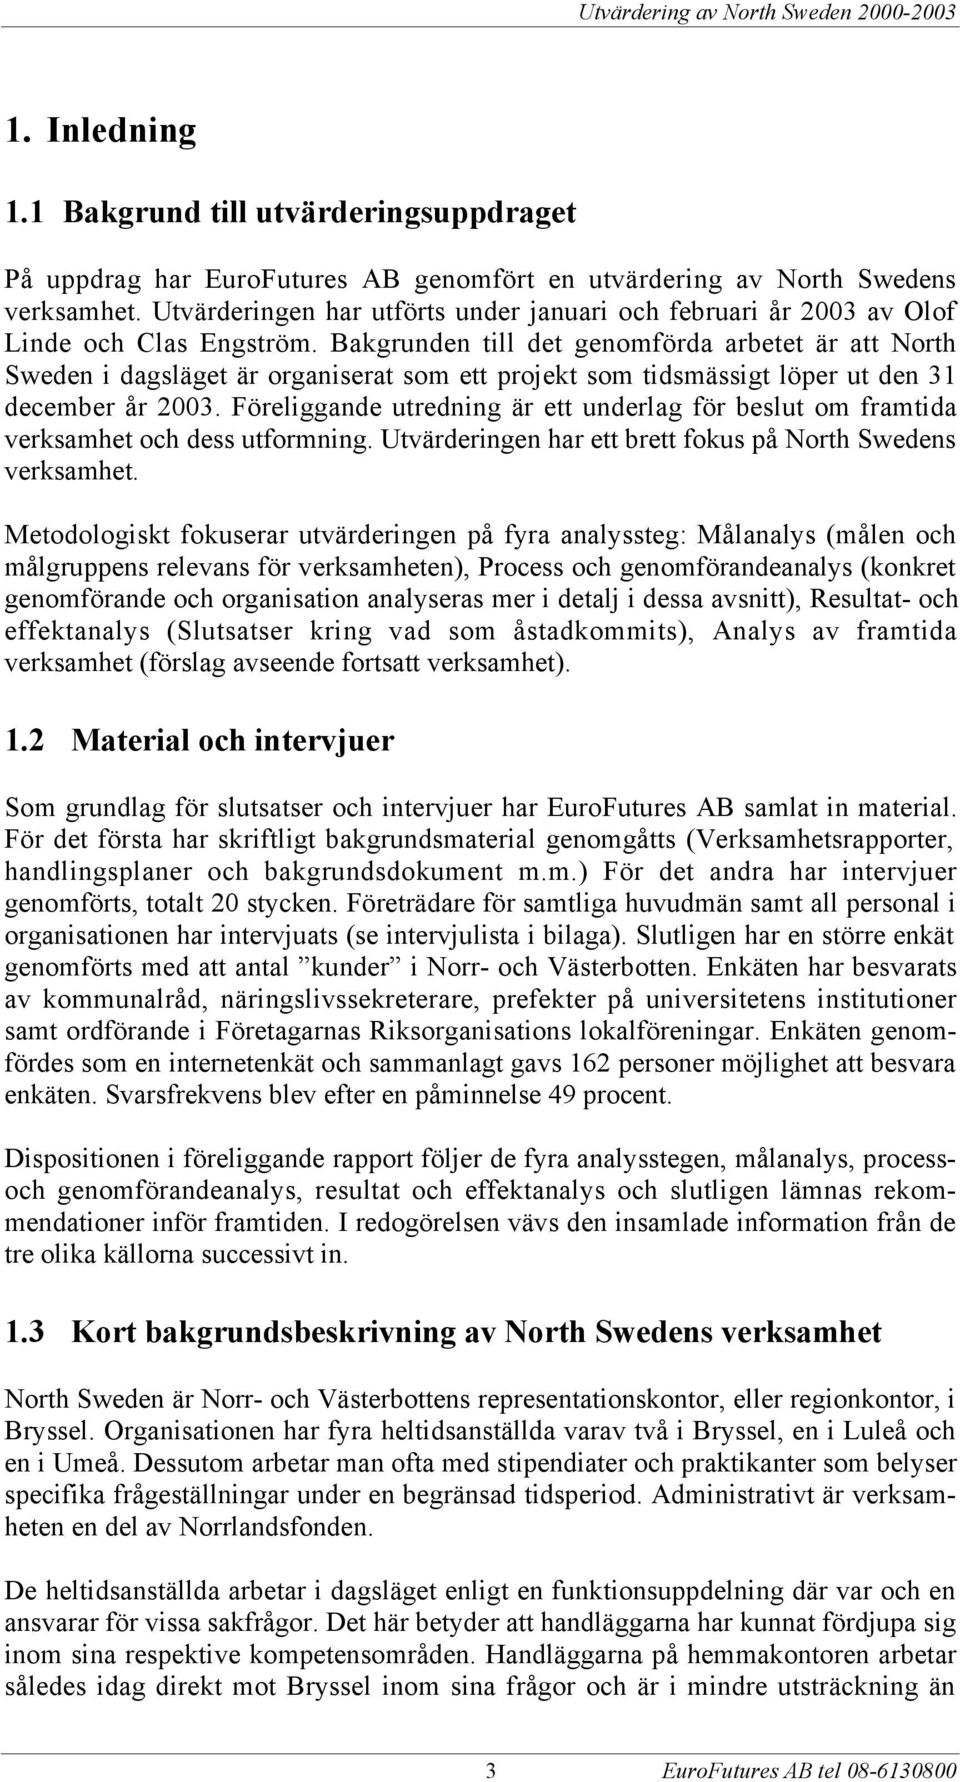 Bakgrunden till det genomfšrda arbetet Šr att North Sweden i dagslšget Šr organiserat som ett projekt som tidsmšssigt lšper ut den 31 december Œr 2003.